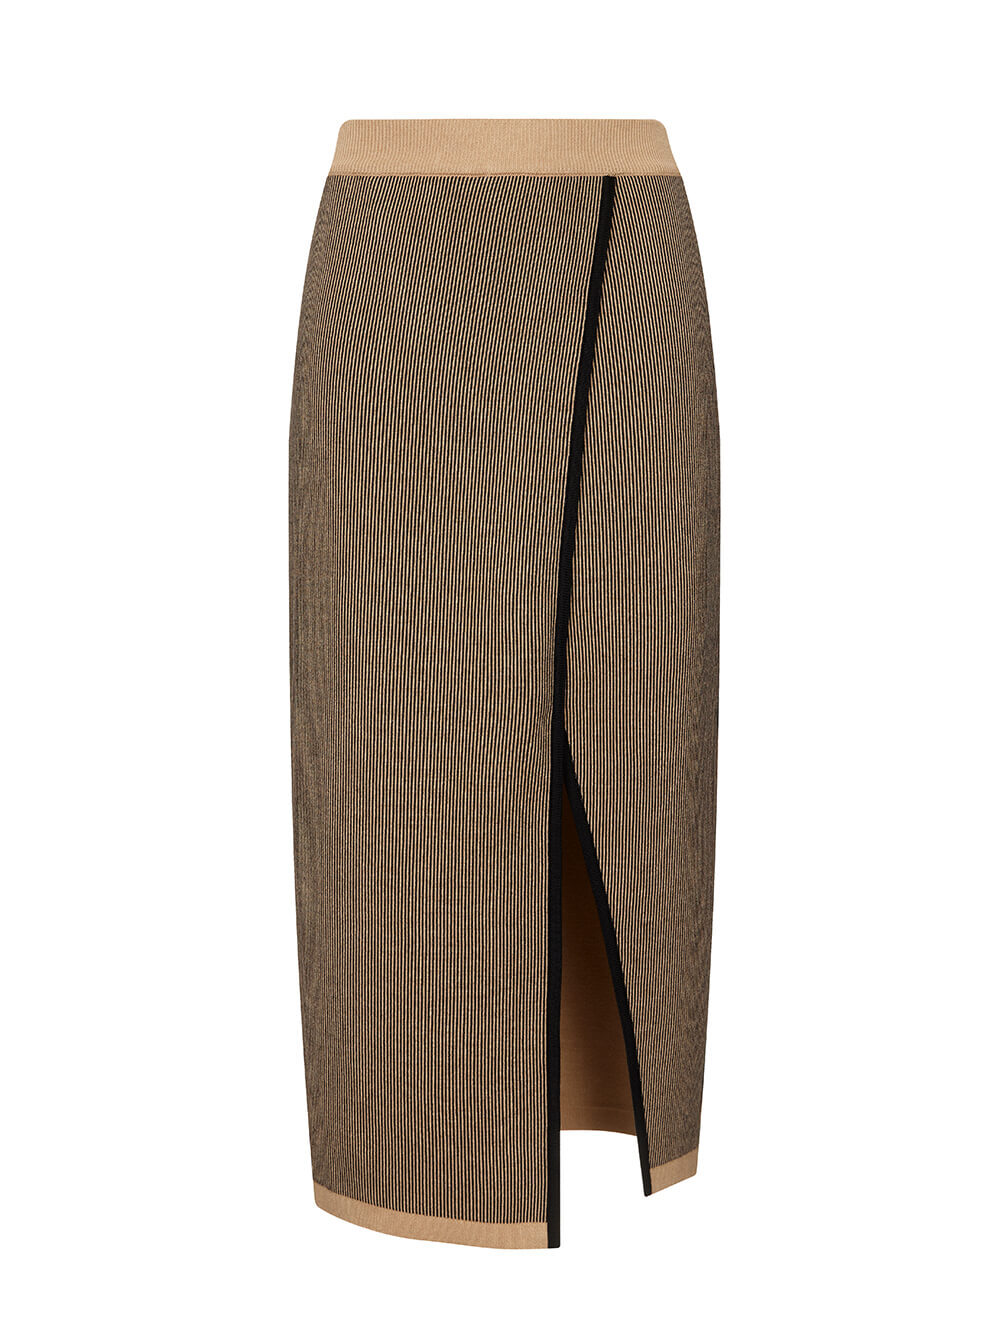 Женская юбка бежевого цвета из шелка и кашемира - фото 1